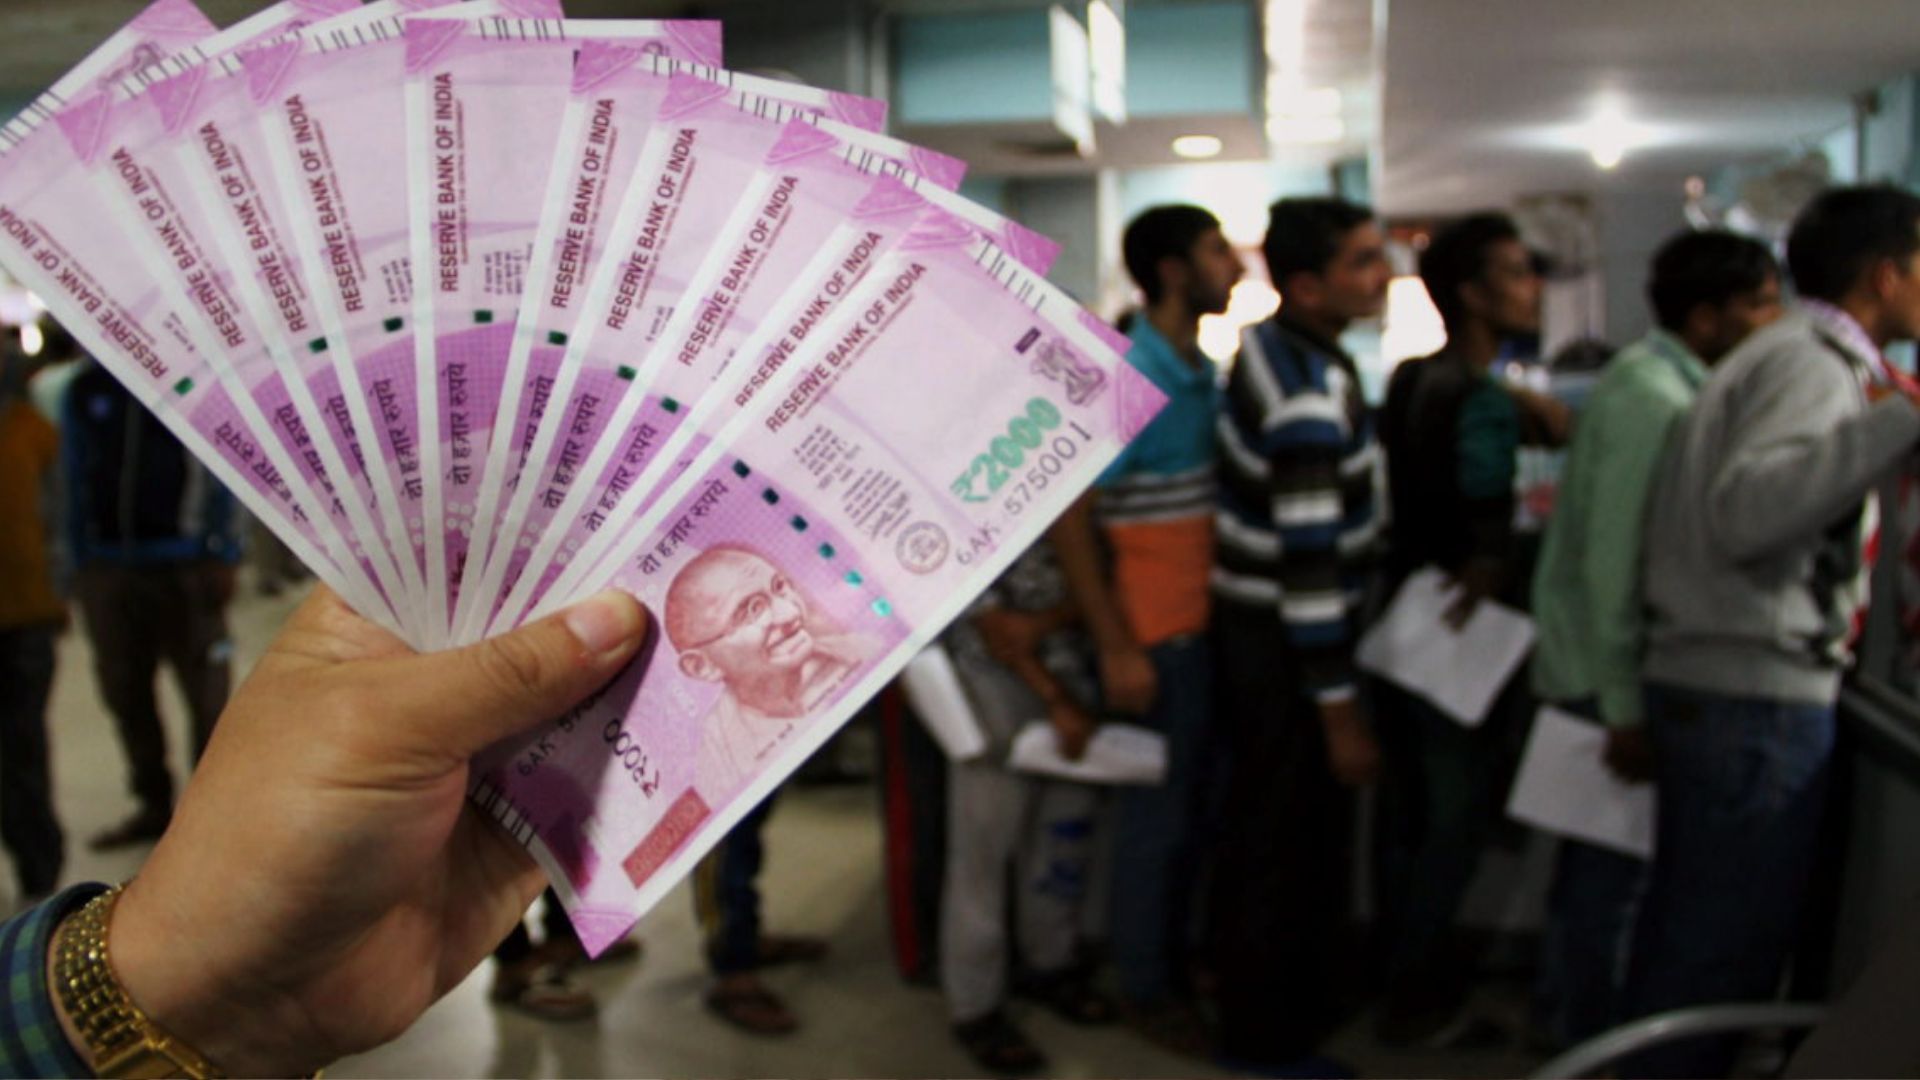 2000 रुपये के नोट से जुड़े हाईकोर्ट के फैसले को सुप्रीम कोर्ट में दी गई चुनौती 